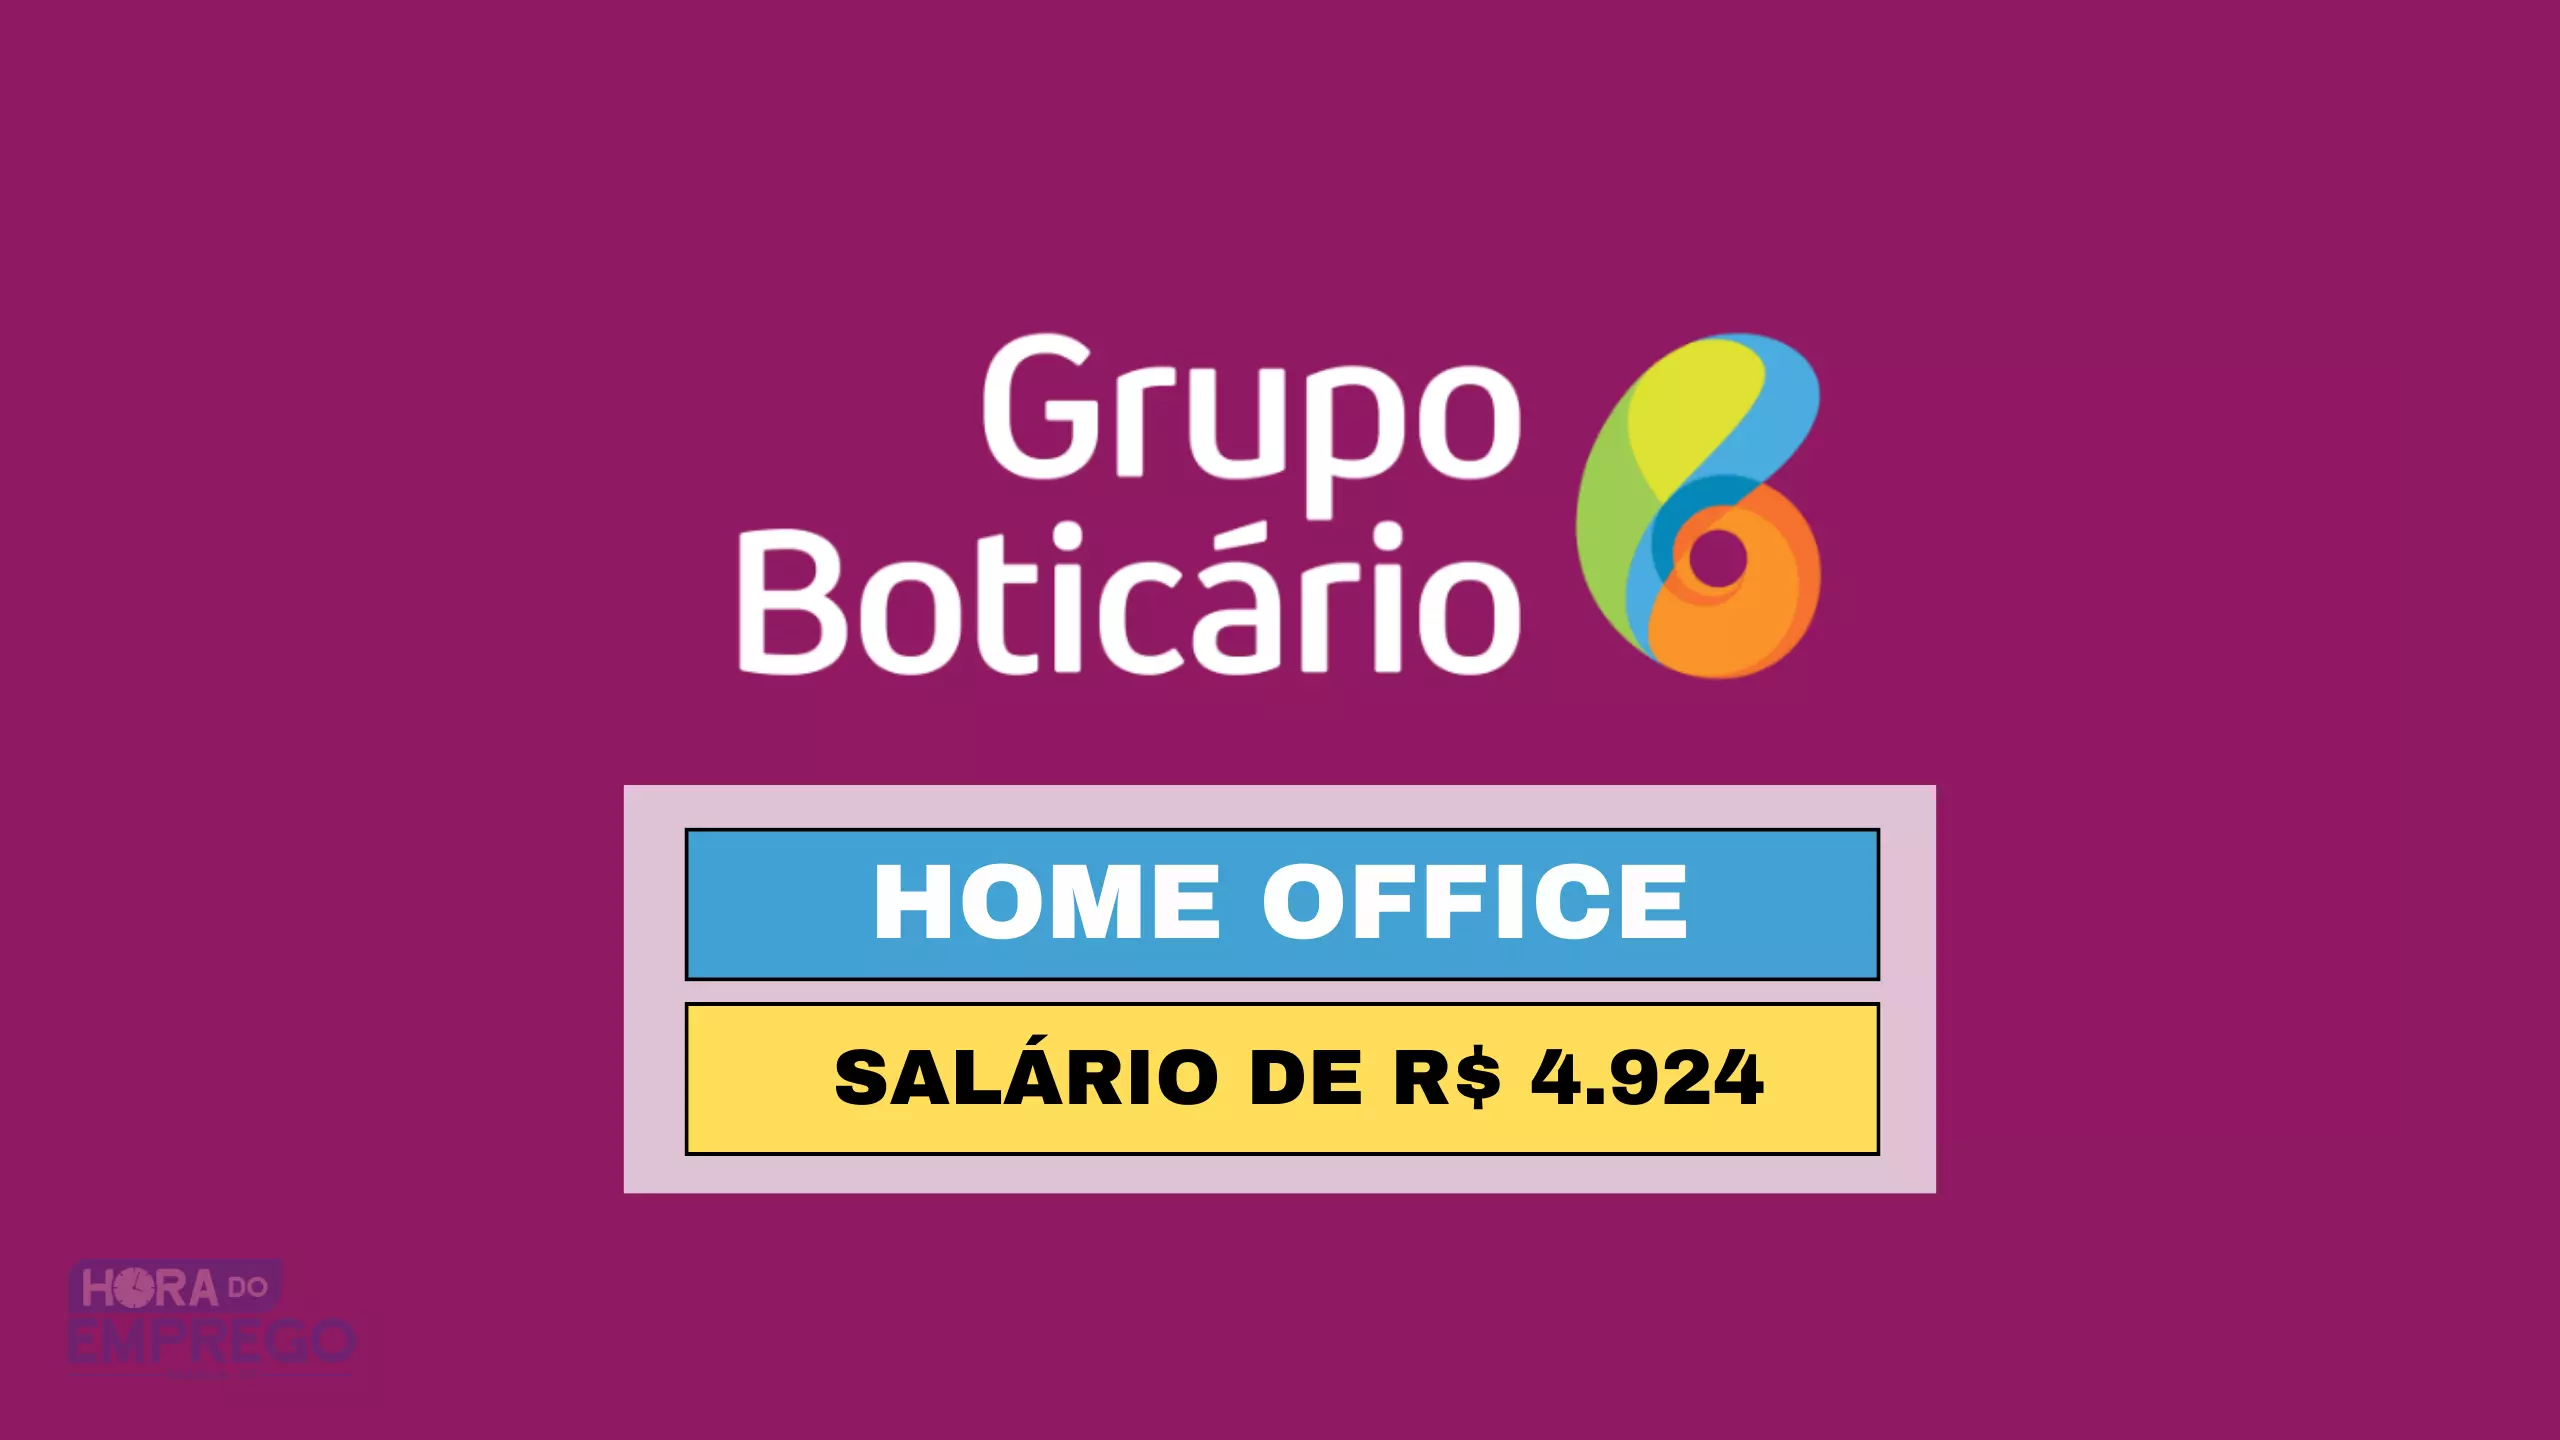 Grupo Boticário abre vaga HOME OFFICE para Assistente II com salário de R$ 4.924 por mês